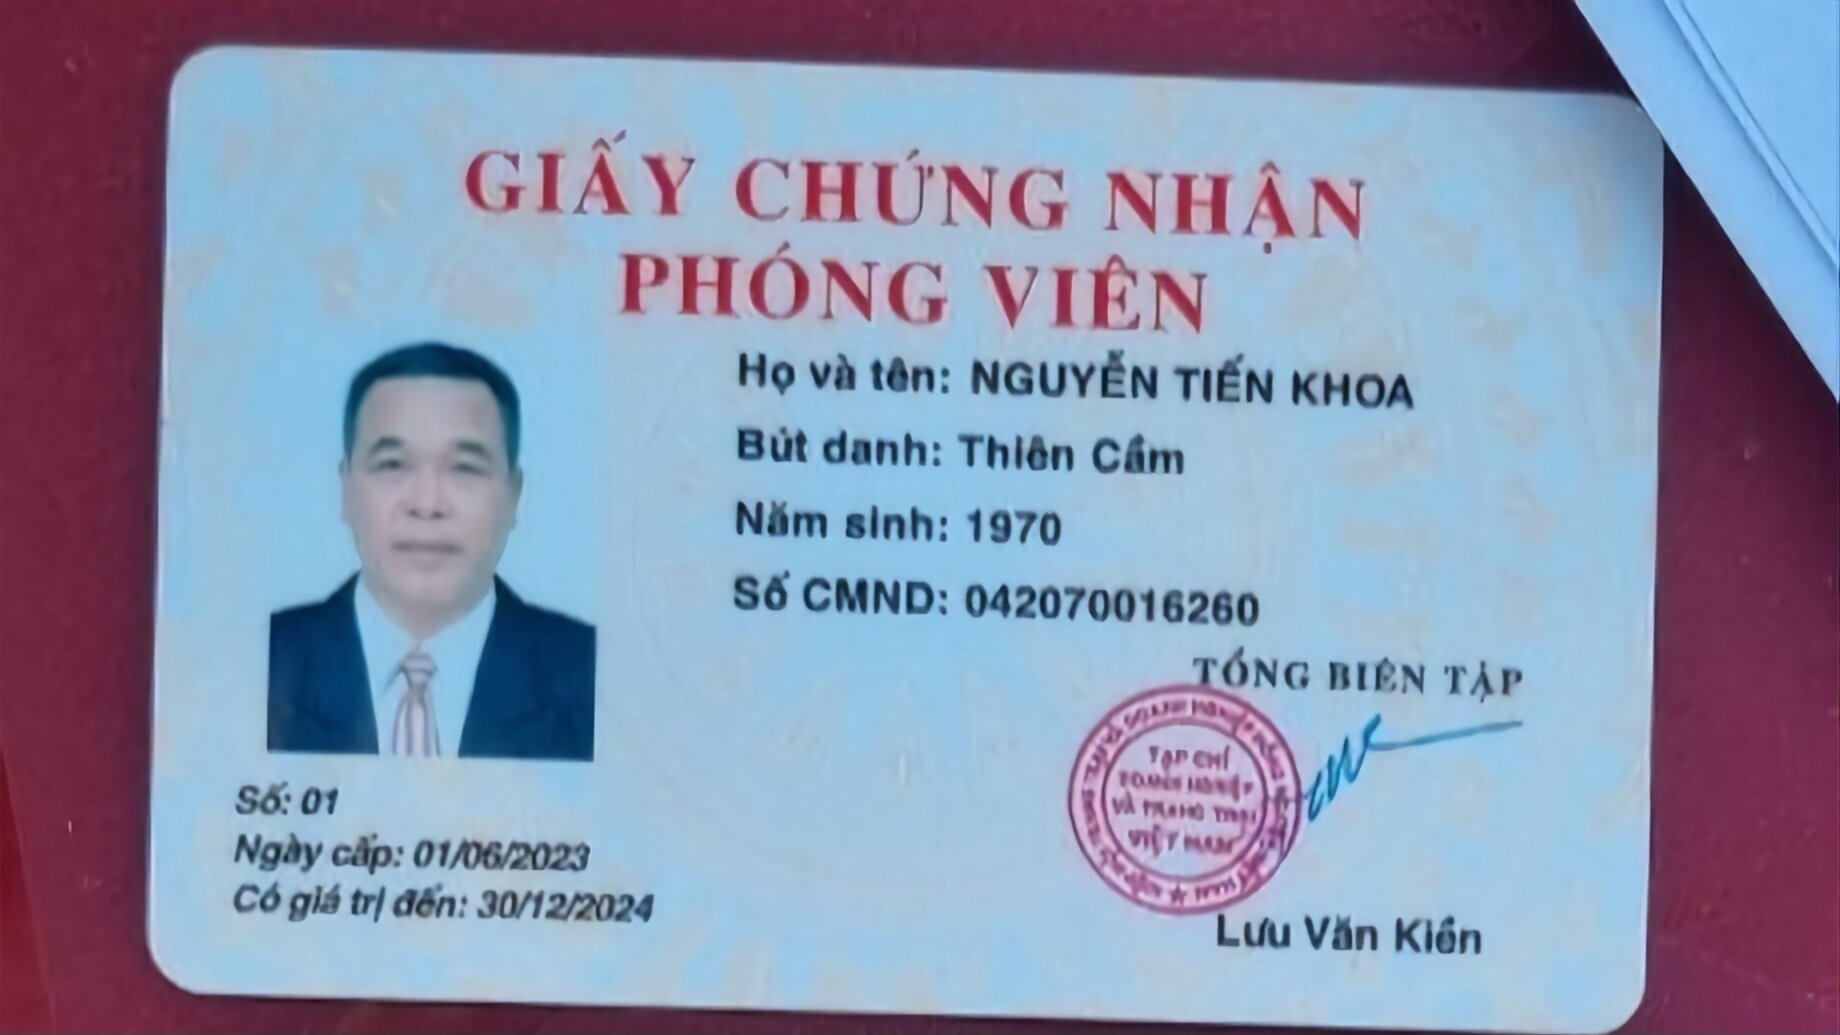 Sau khi bị tạm giữ, ông Nguyễn Tiến Khoa xuất trình thẻ chứng nhận phóng viên. Ảnh: CACC